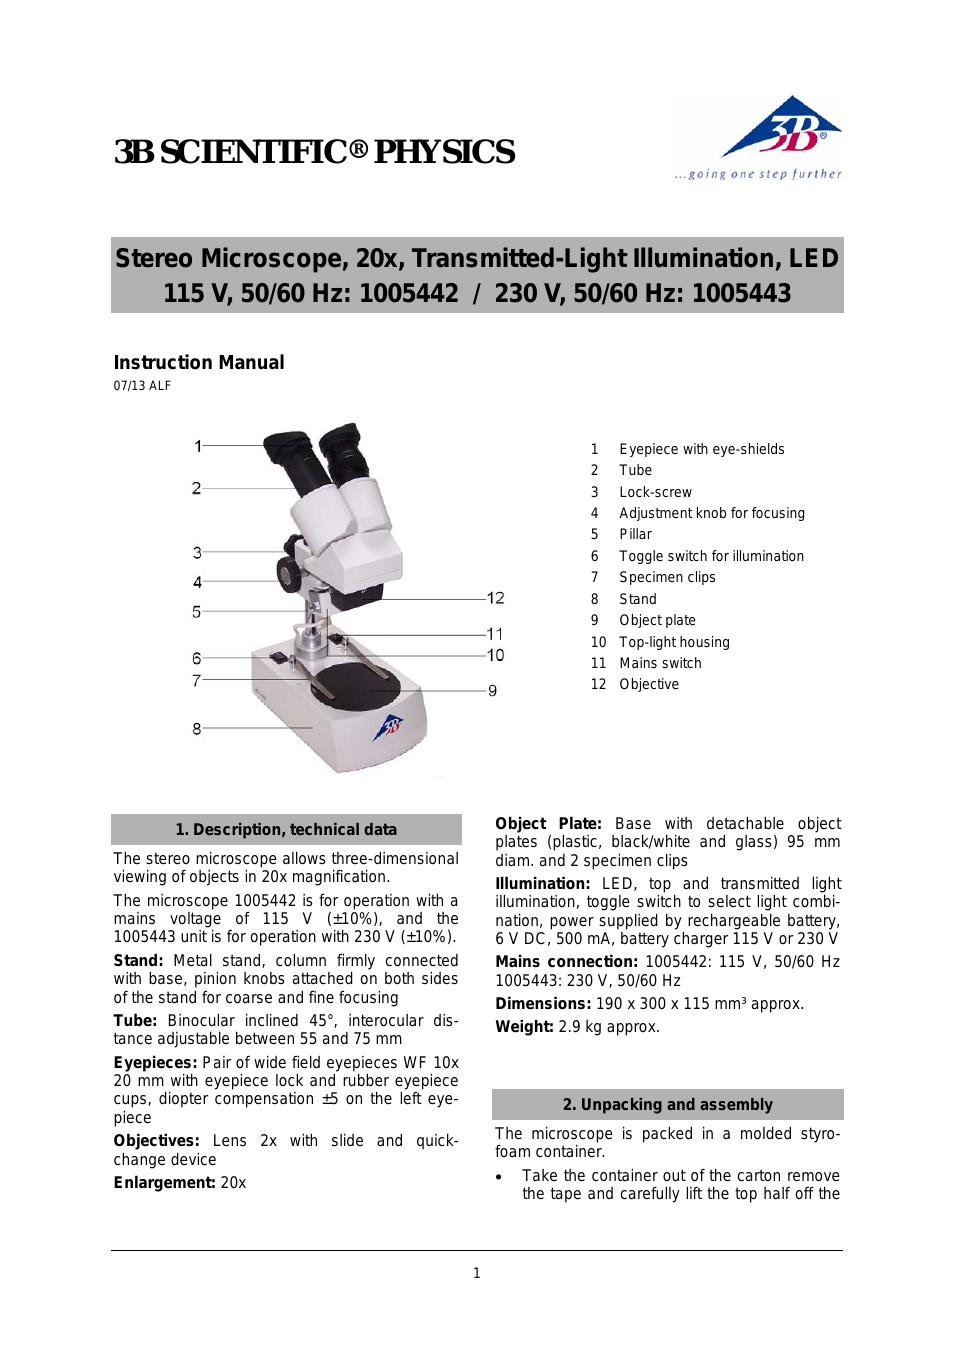 Stereo Microscope, 20x, Transmitted-Light LED (115 V, 50__60 Hz)